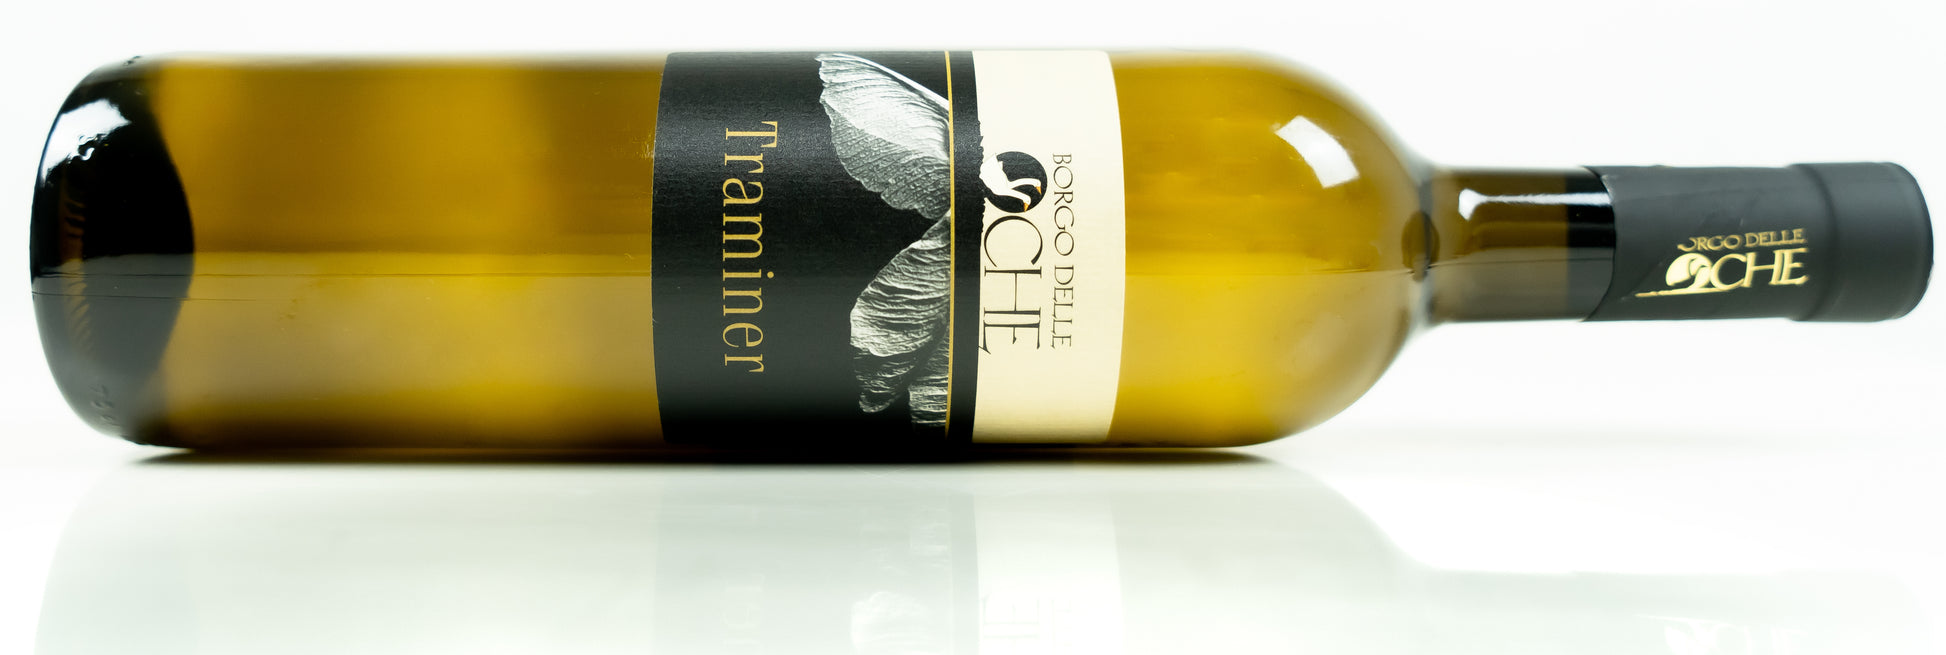 Witte wijn Traminer Borgo delle Oche Friuli